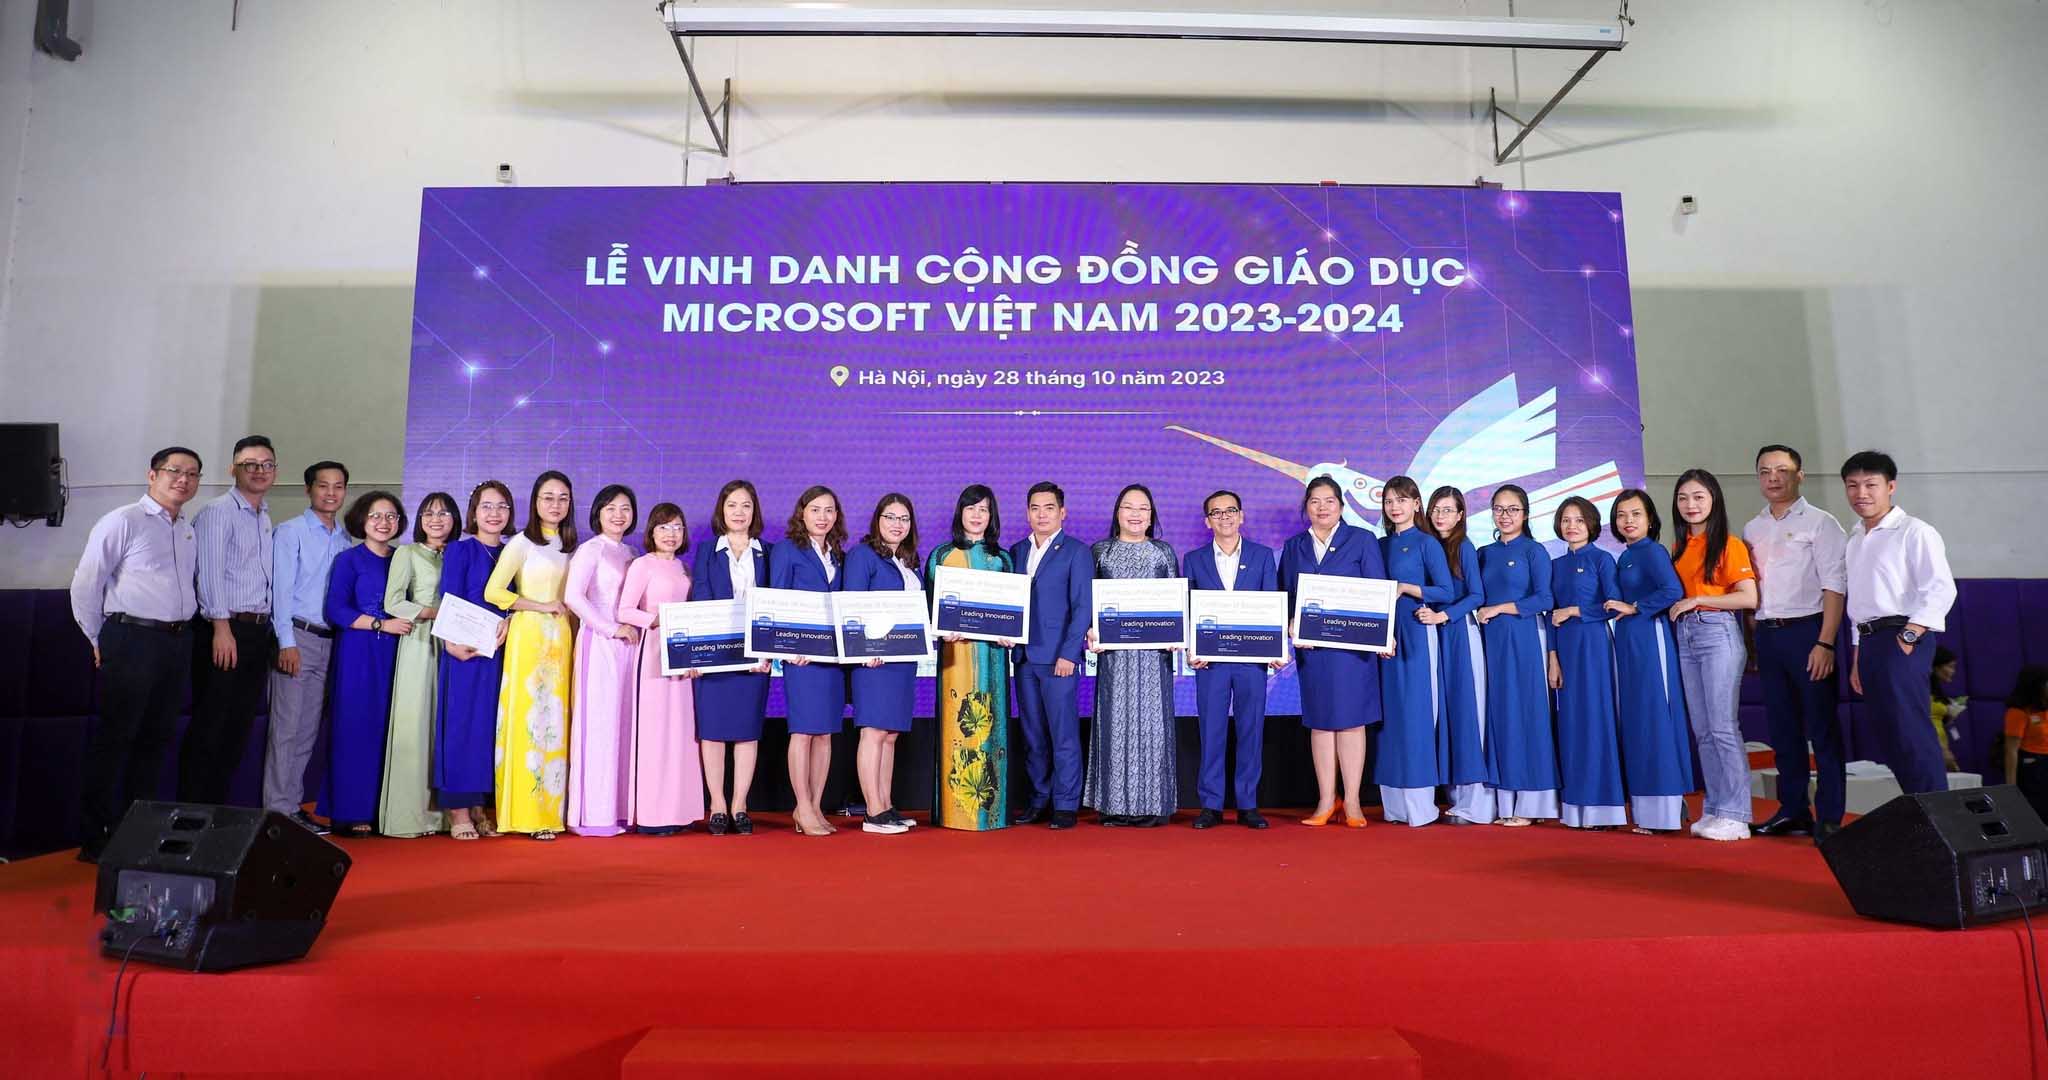 IGC Group tham gia Lễ Vinh danh Cộng đồng Giáo dục Microsoft Việt Nam 2023-2024.